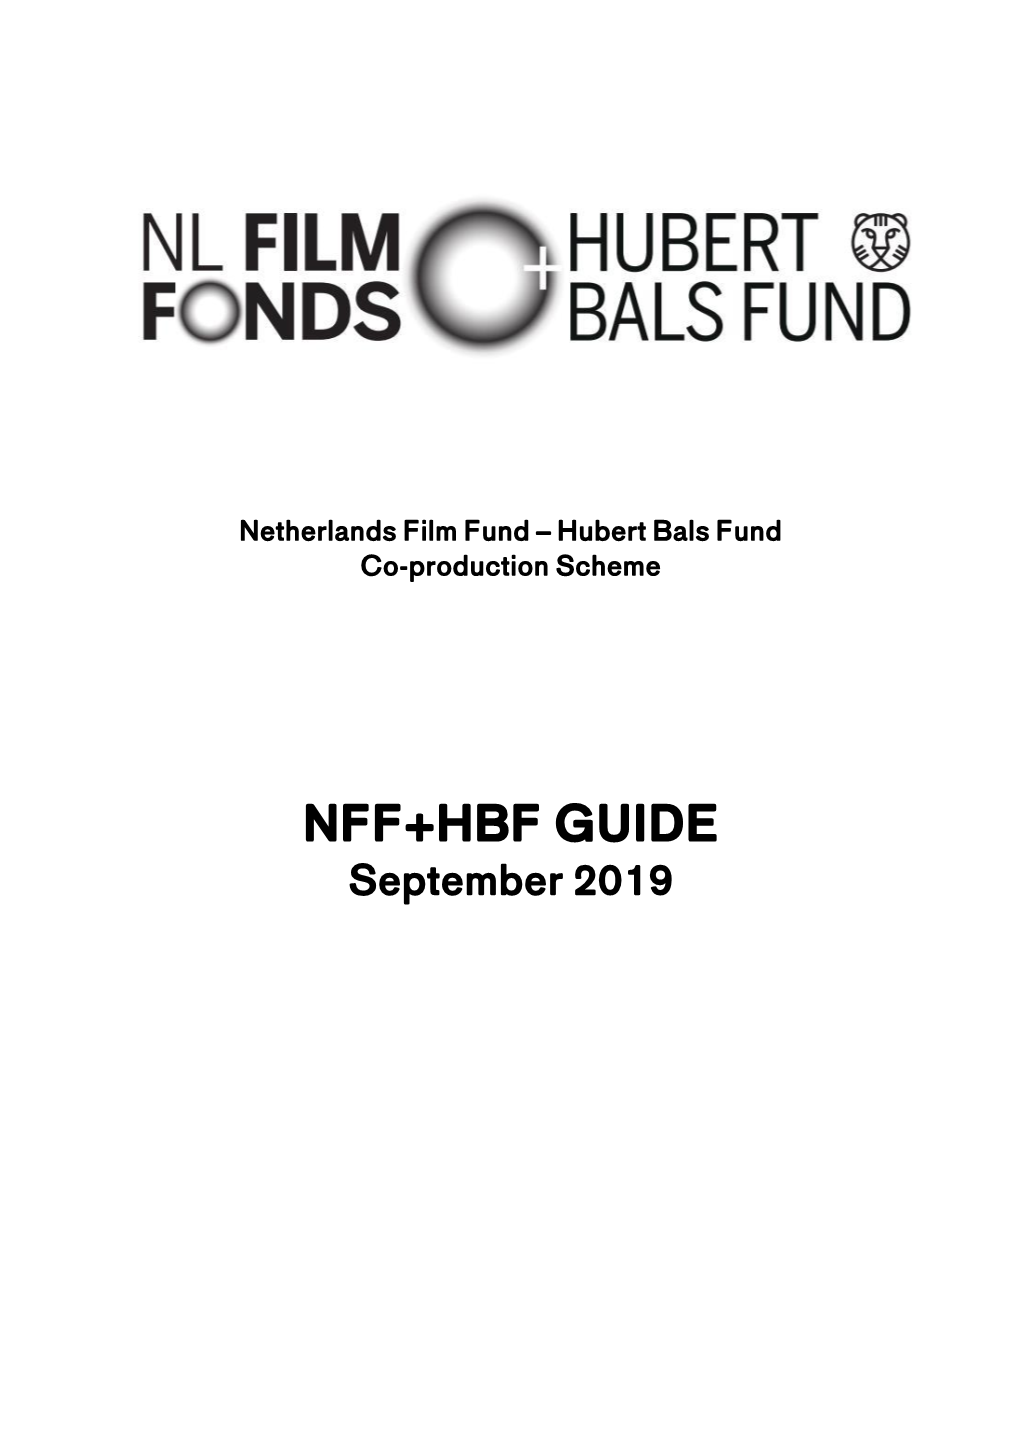 NFF+HBF GUIDE September 2019